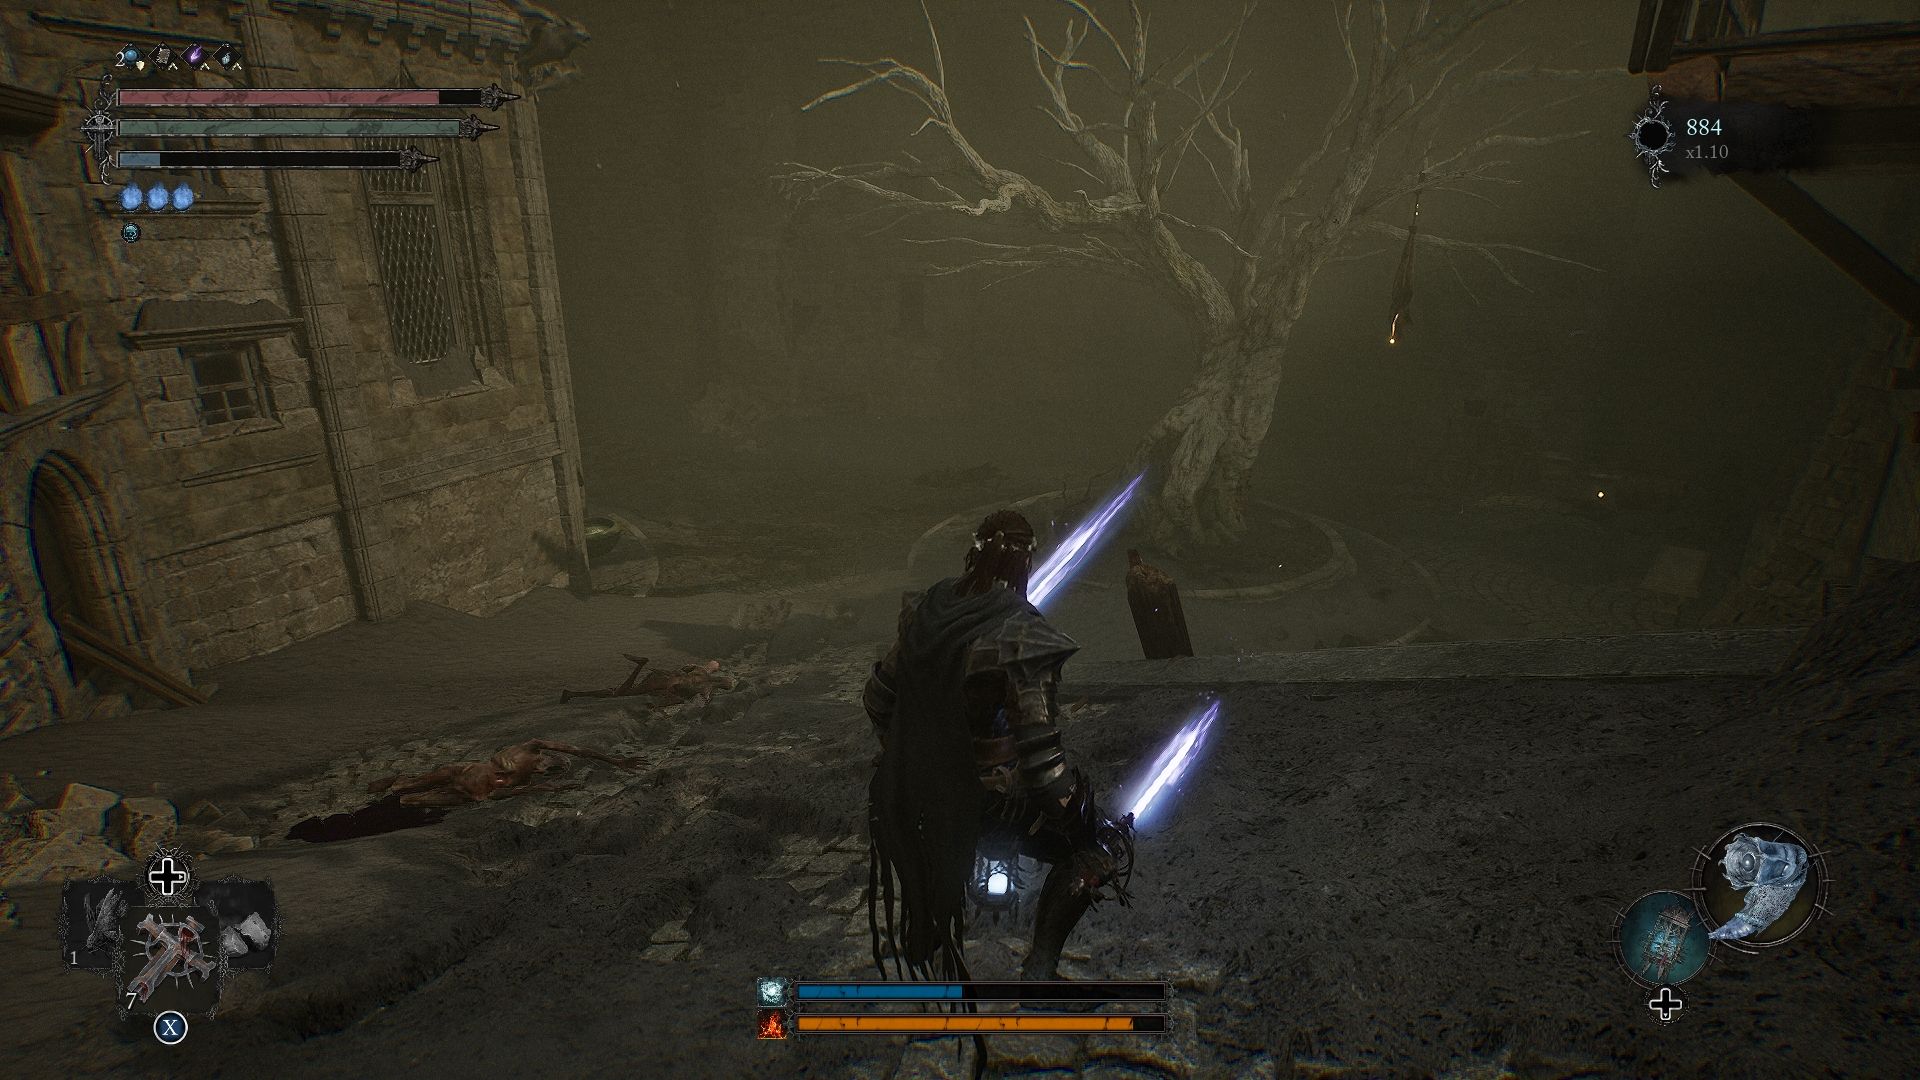 Spieler steht auf einer offenen Fläche mit einem Baum in der Mitte. Lords of the Fallen